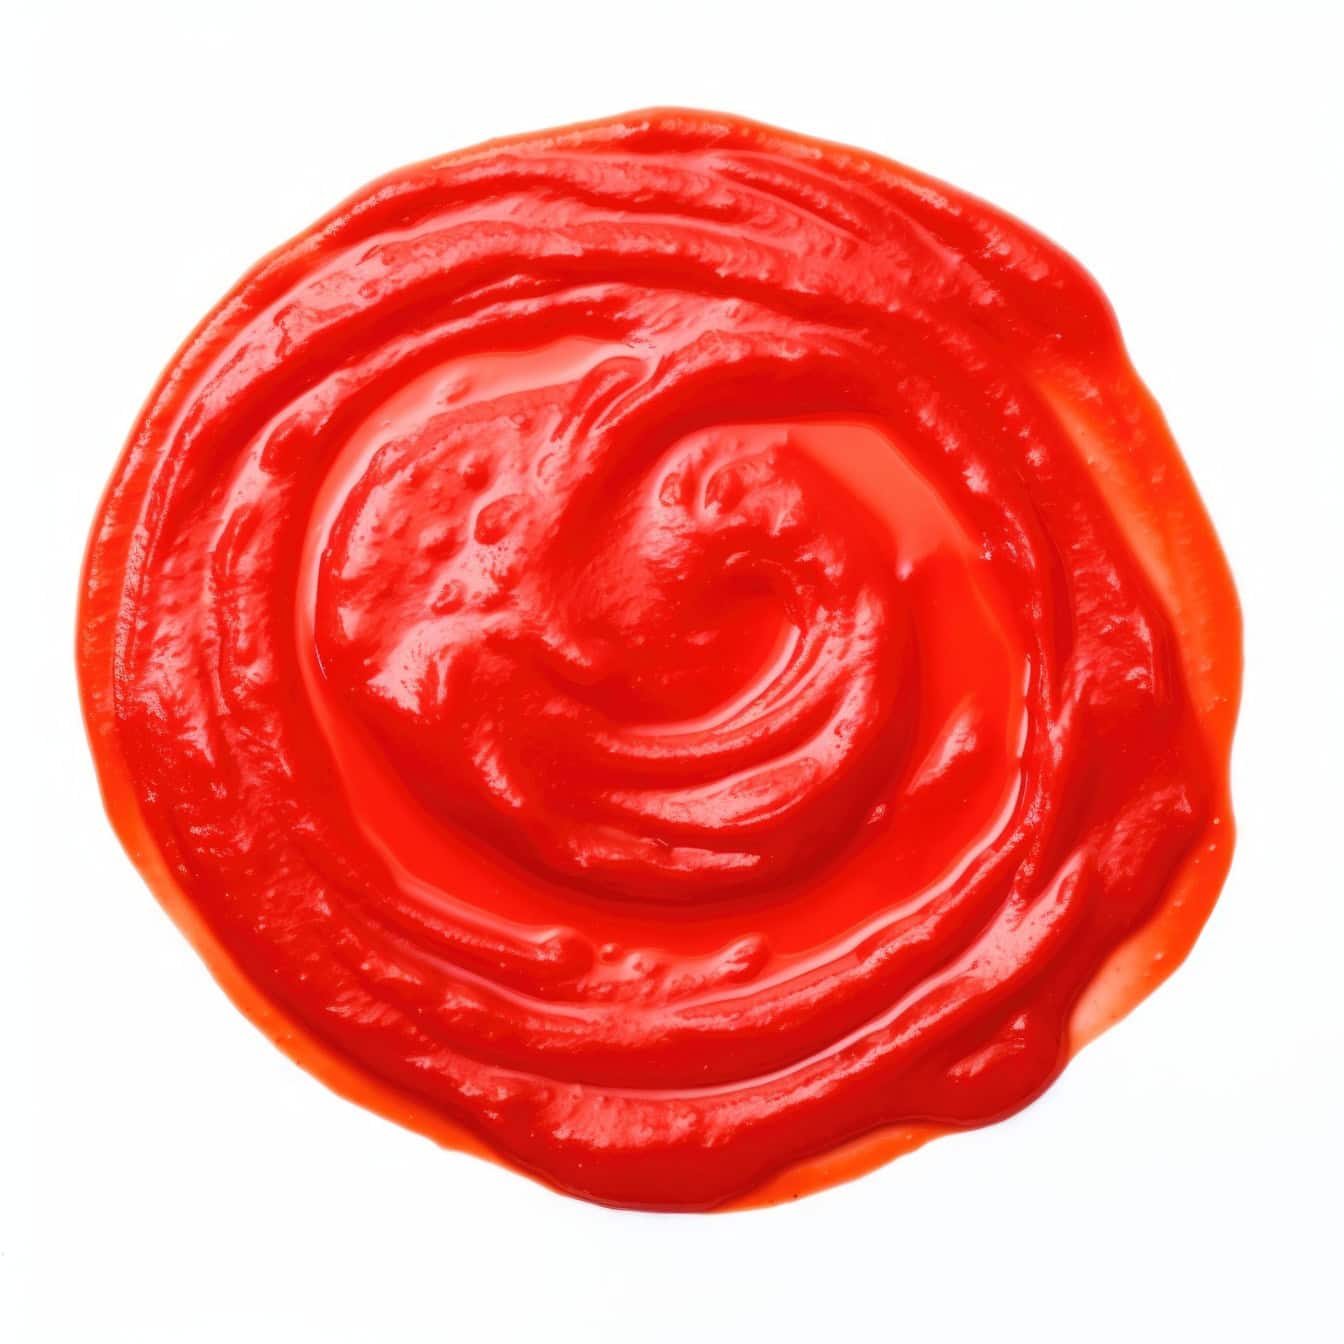 Punainen ympyrä ketsupin tai tomaattipastan kastikkeesta valkoisella pohjalla